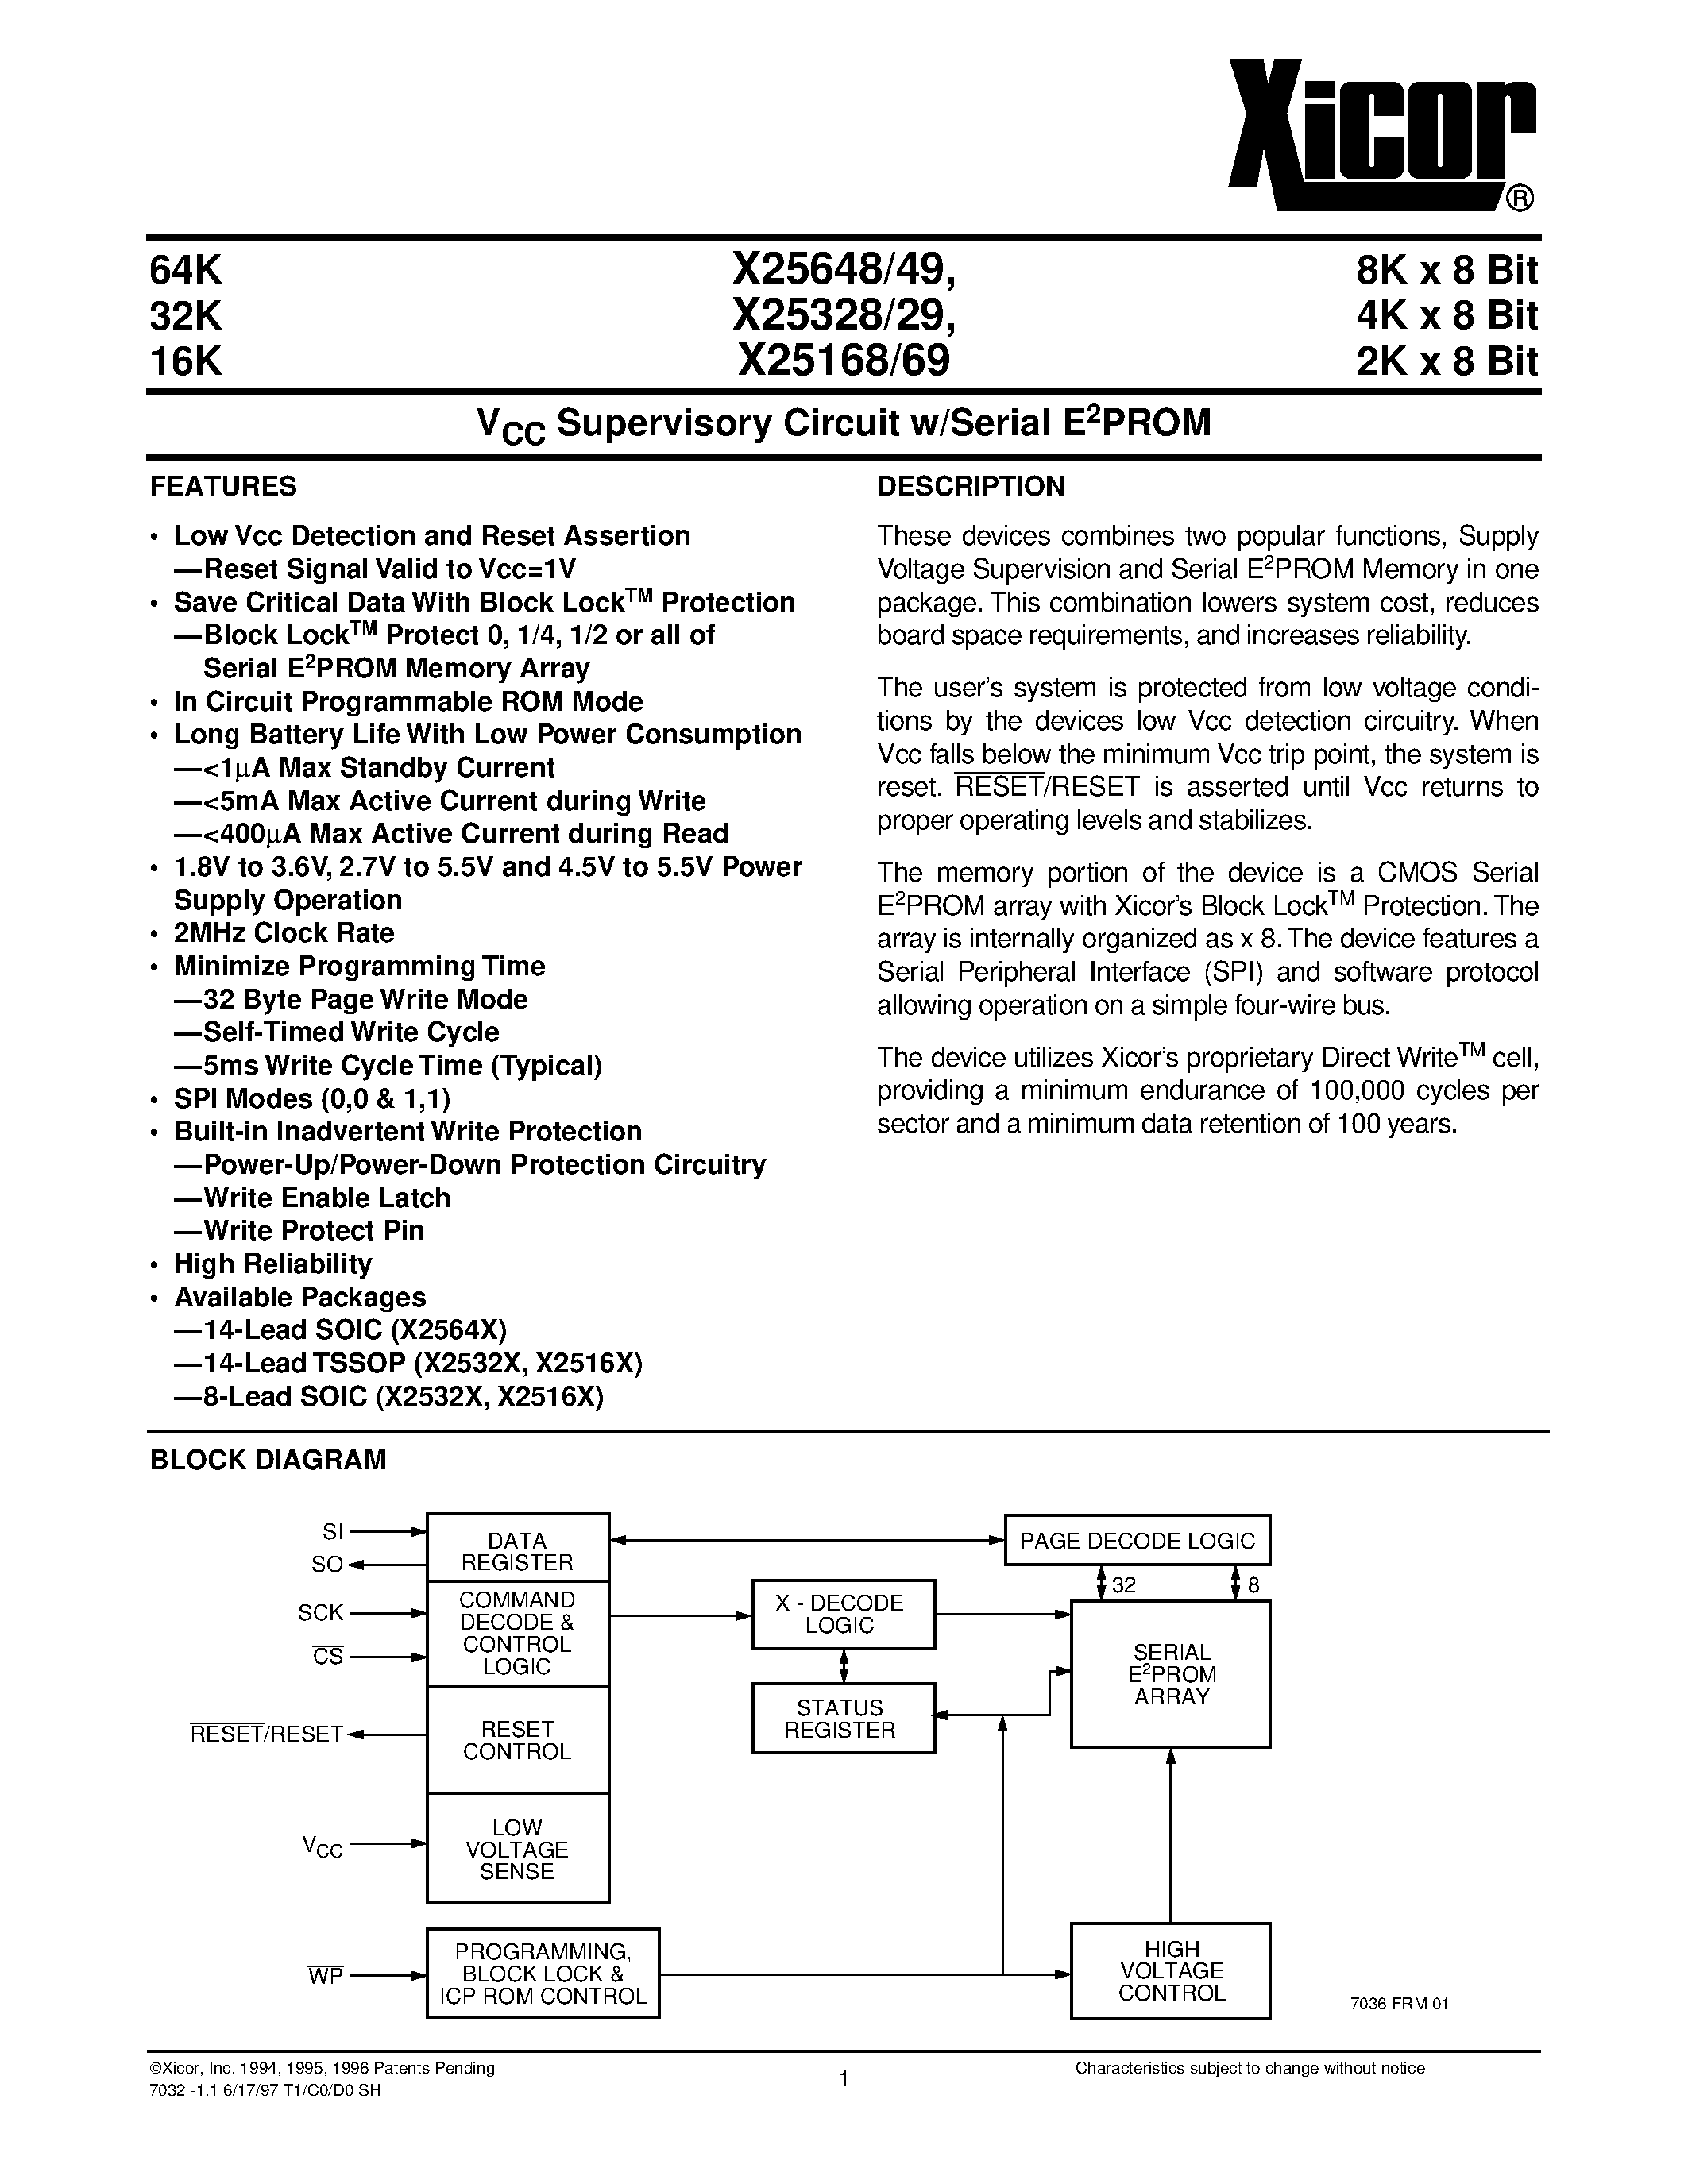 Даташит X25649S14 - V CC Supervisory Circuit w/Serial E 2 PROM страница 1